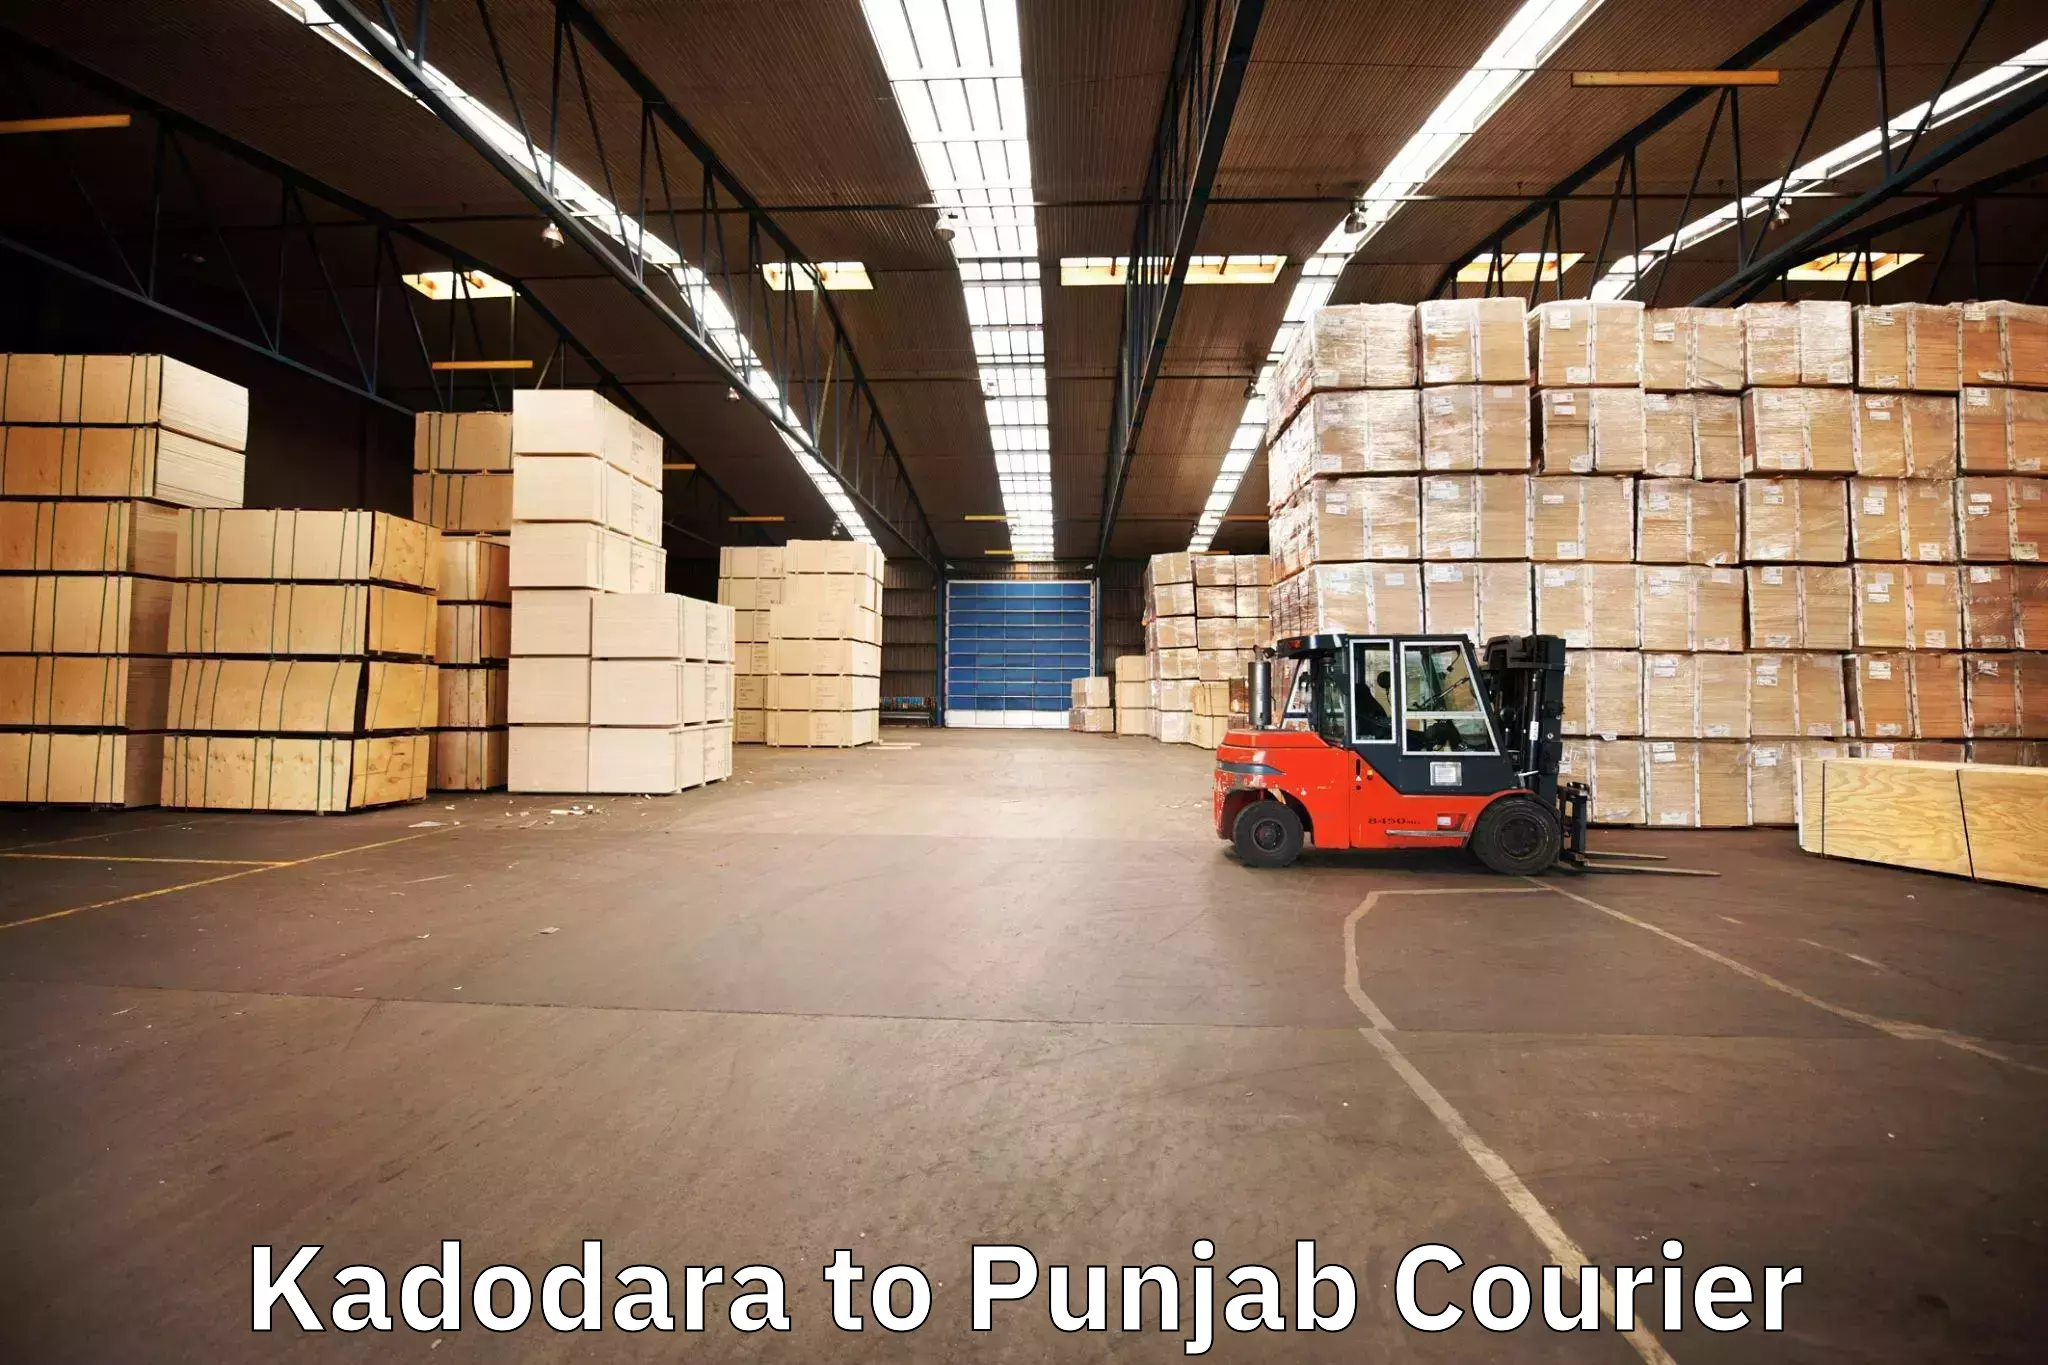 Furniture moving experts Kadodara to Punjab